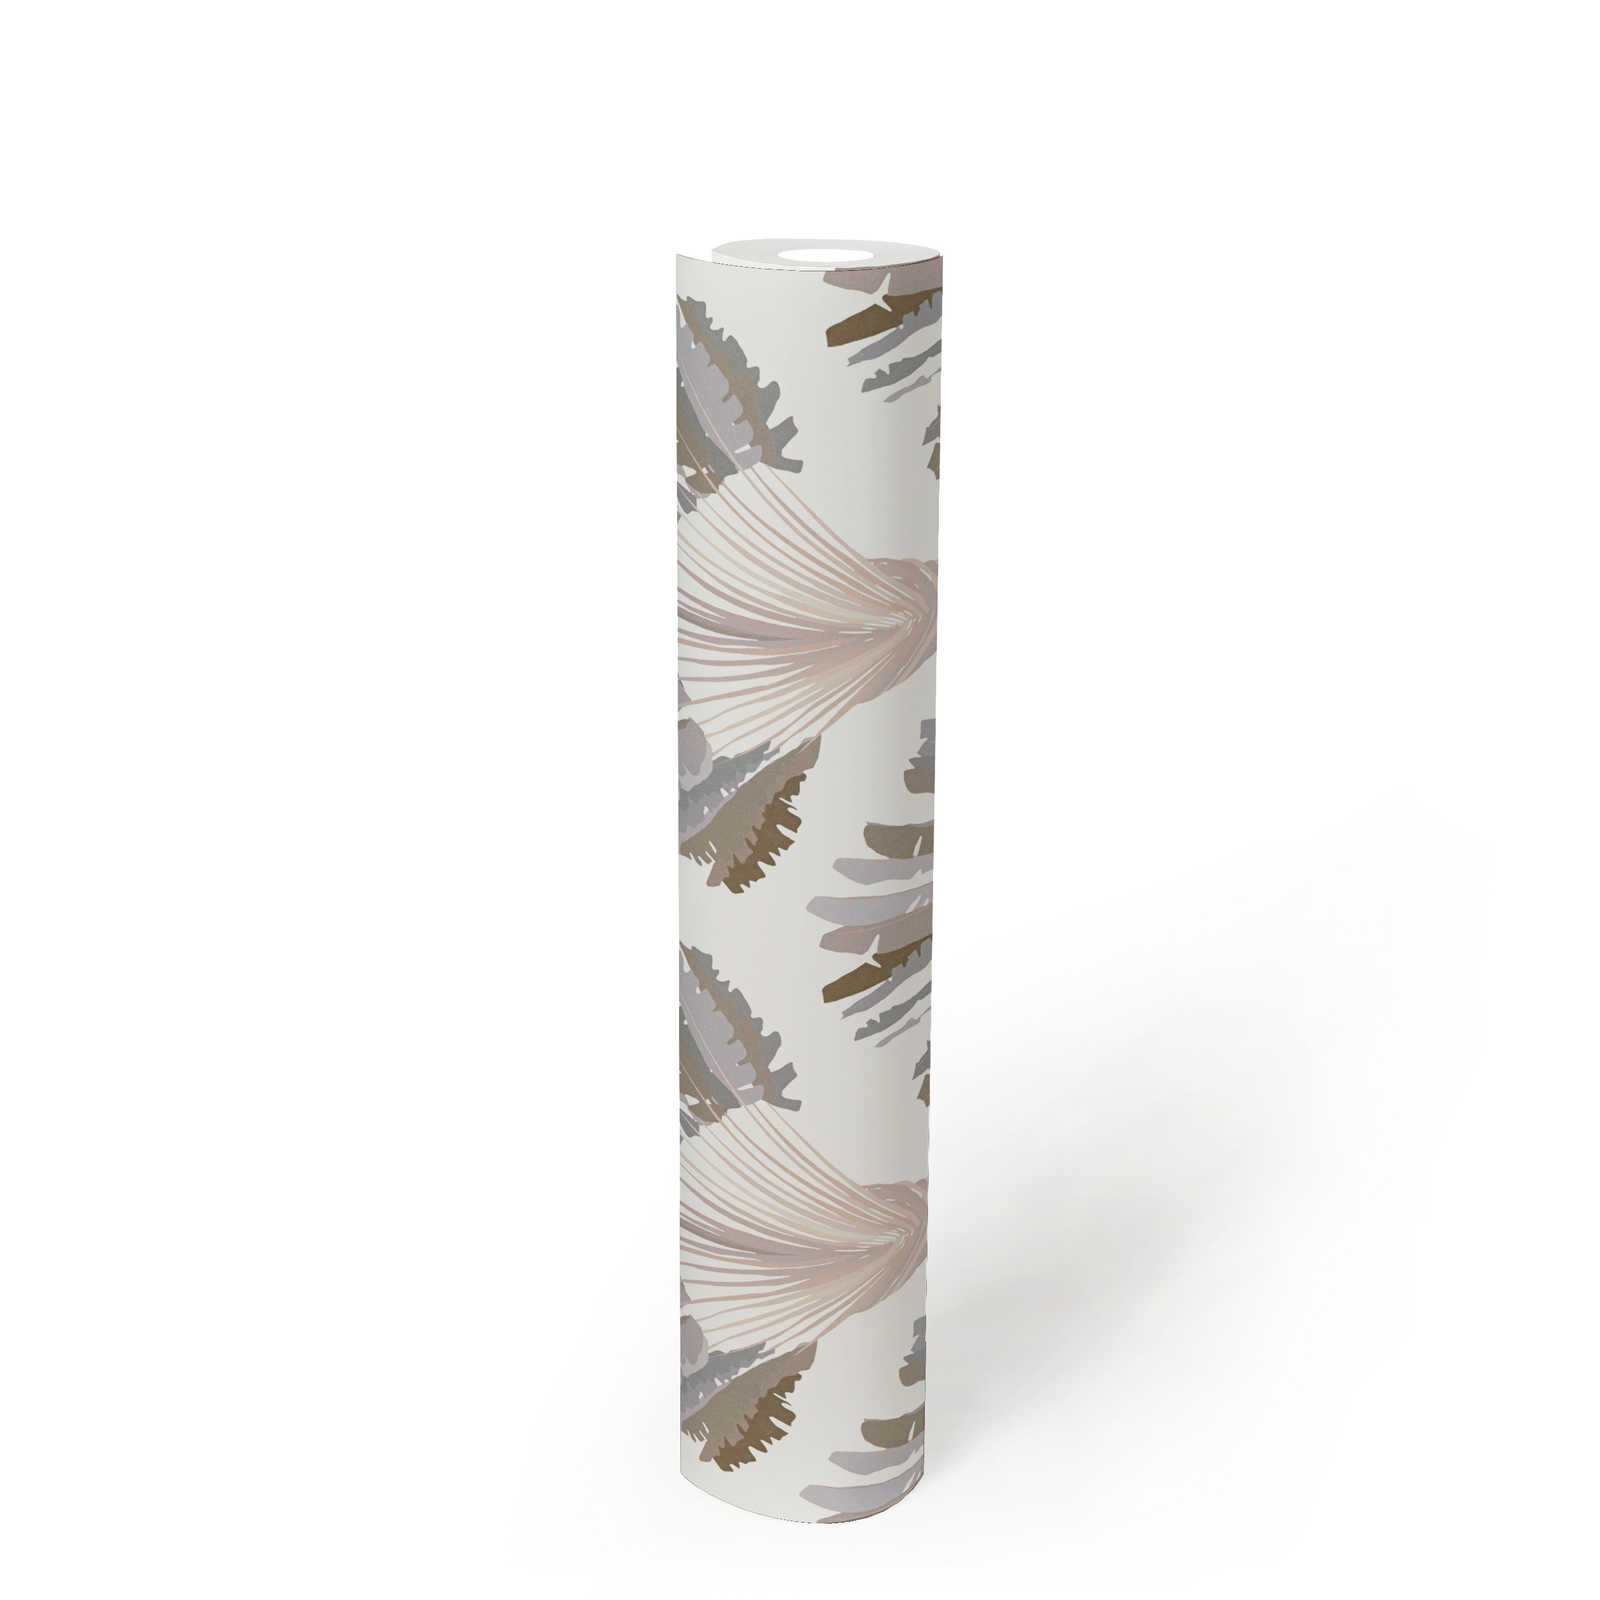             Tapete Grau Beige mit Palmen Muster & Block Design – Grau, Weiß, Braun
        